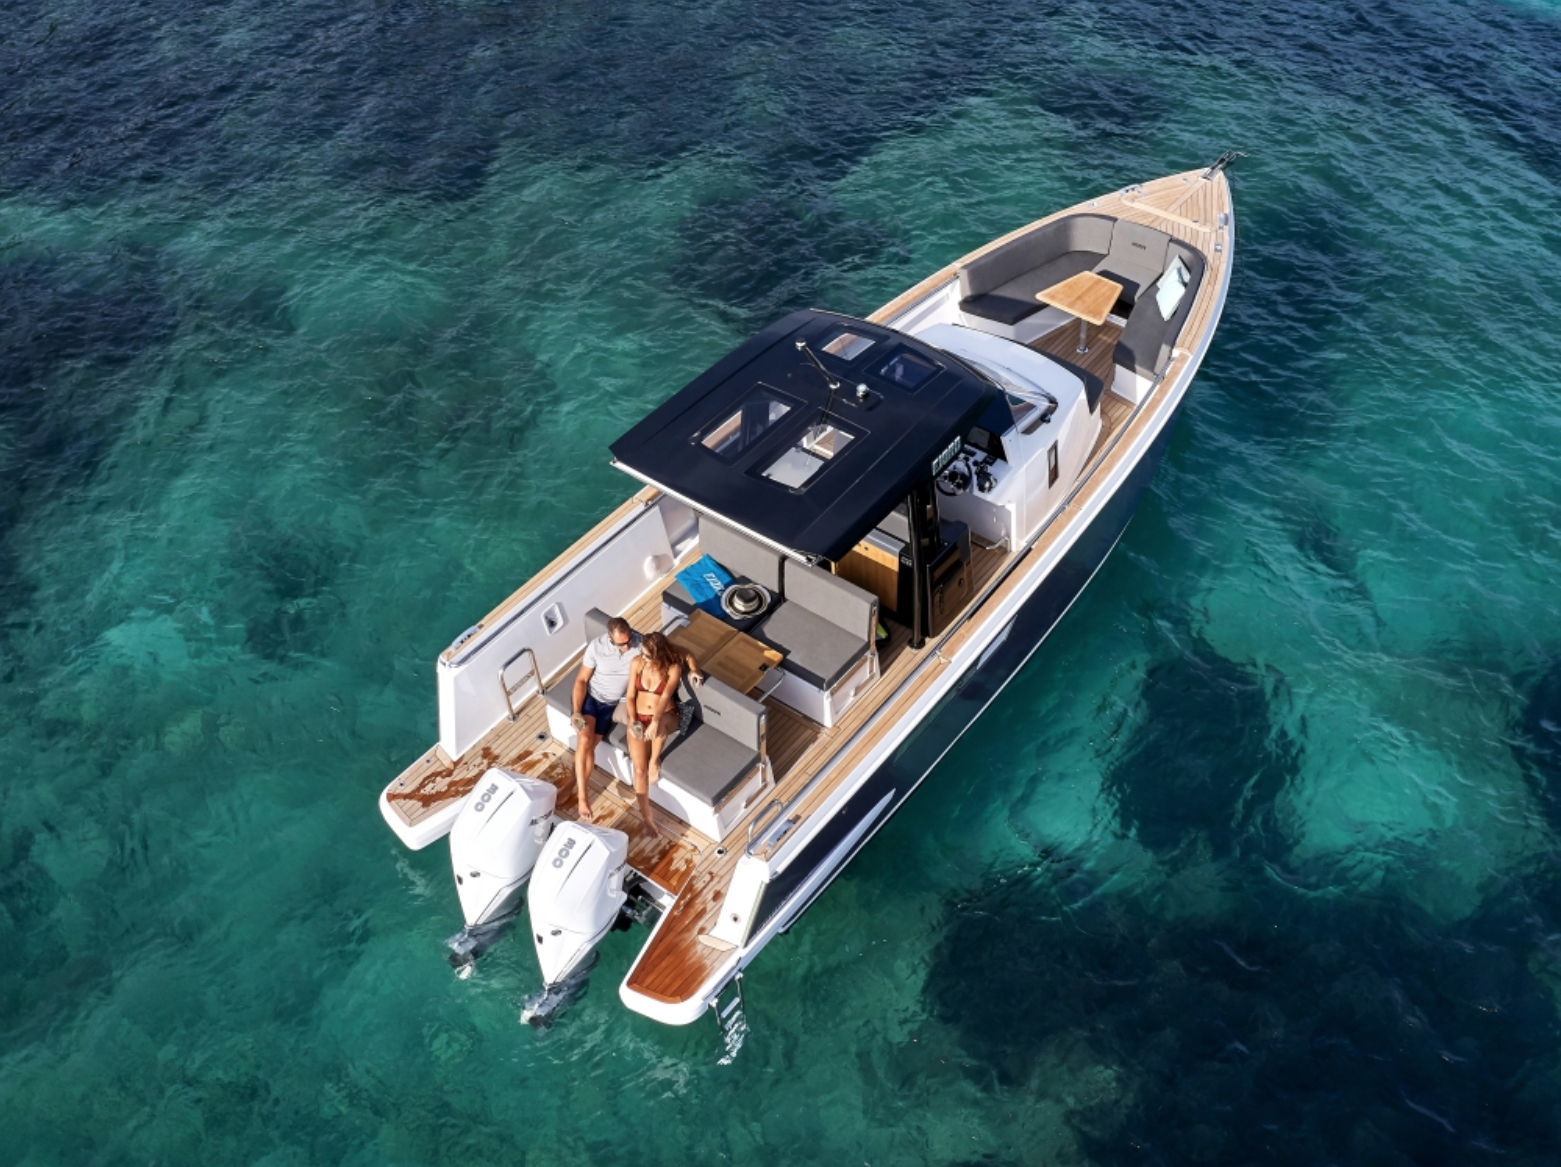 Fjord 38 Express - Motorboat rental worldwide & Boat hire in Greece Cyclades Islands Mykonos Mykonos 1